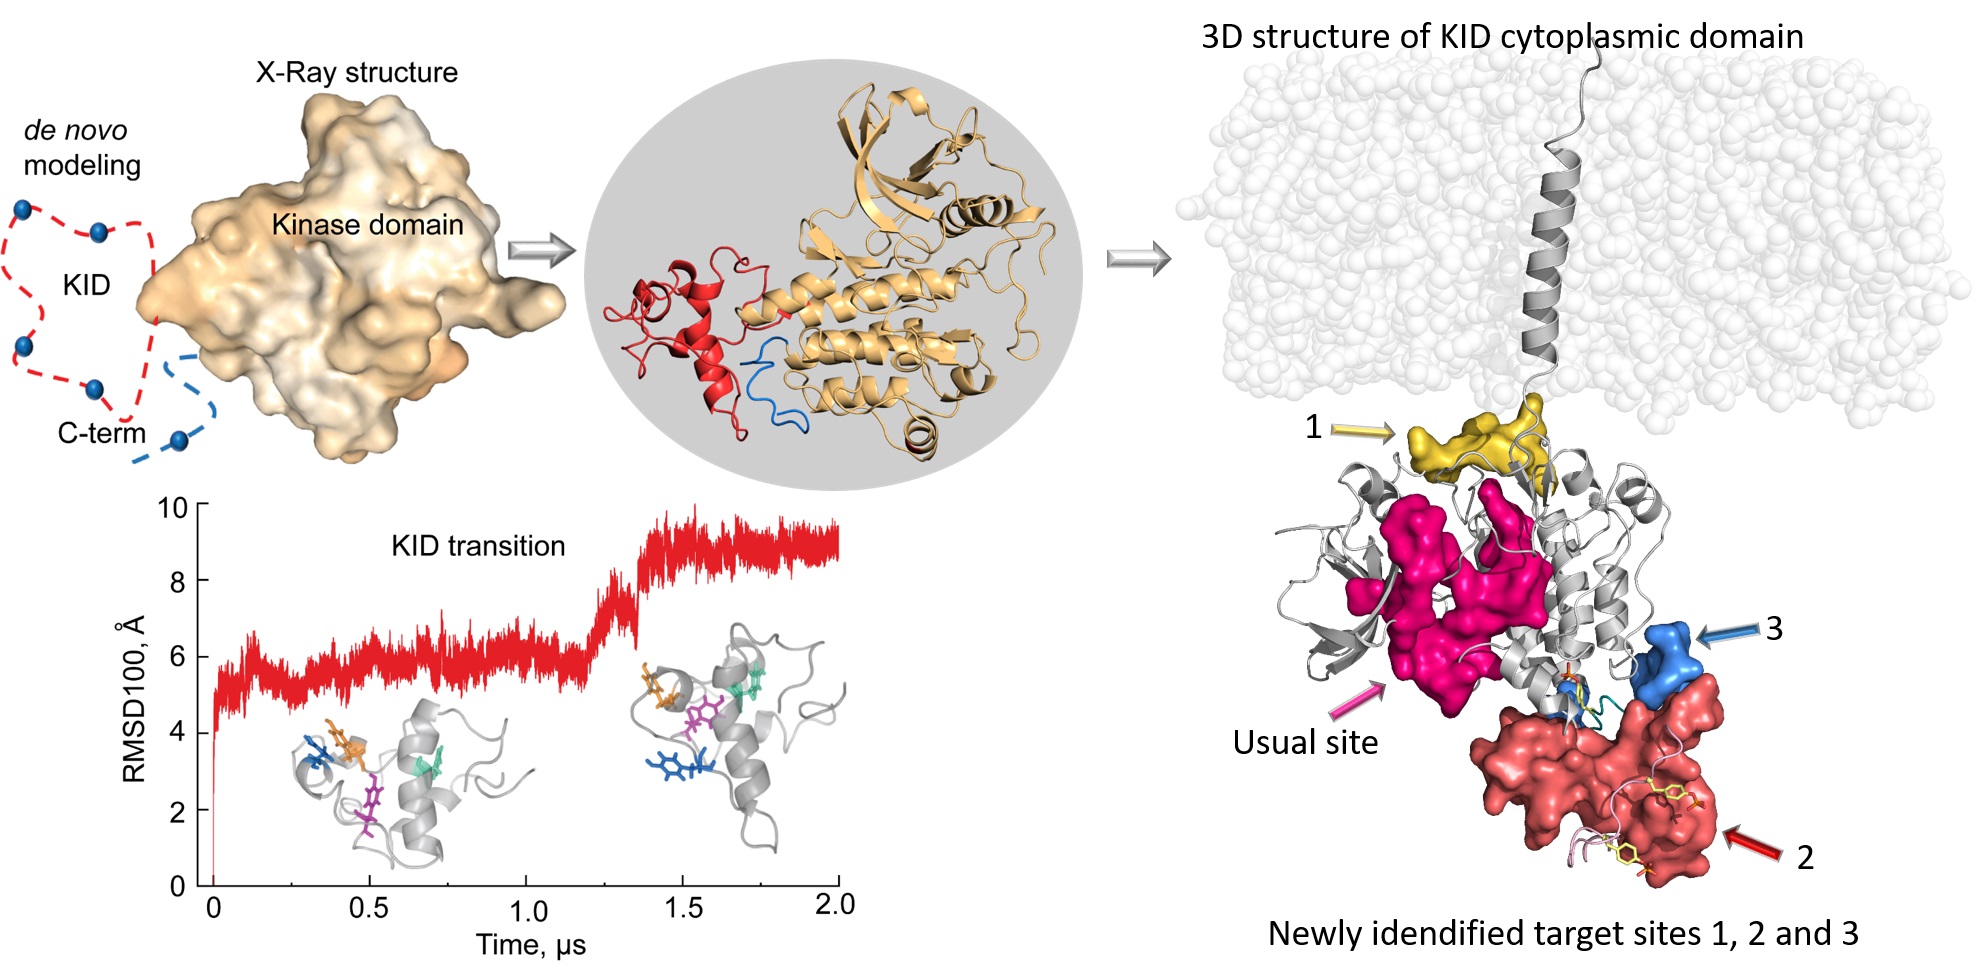 La modélisation du domaine cytoplasmique du RTK KIT permet d'identifier de nouvelles cibles pour le développement de molécules anticancéreuses de nouvelle génération.